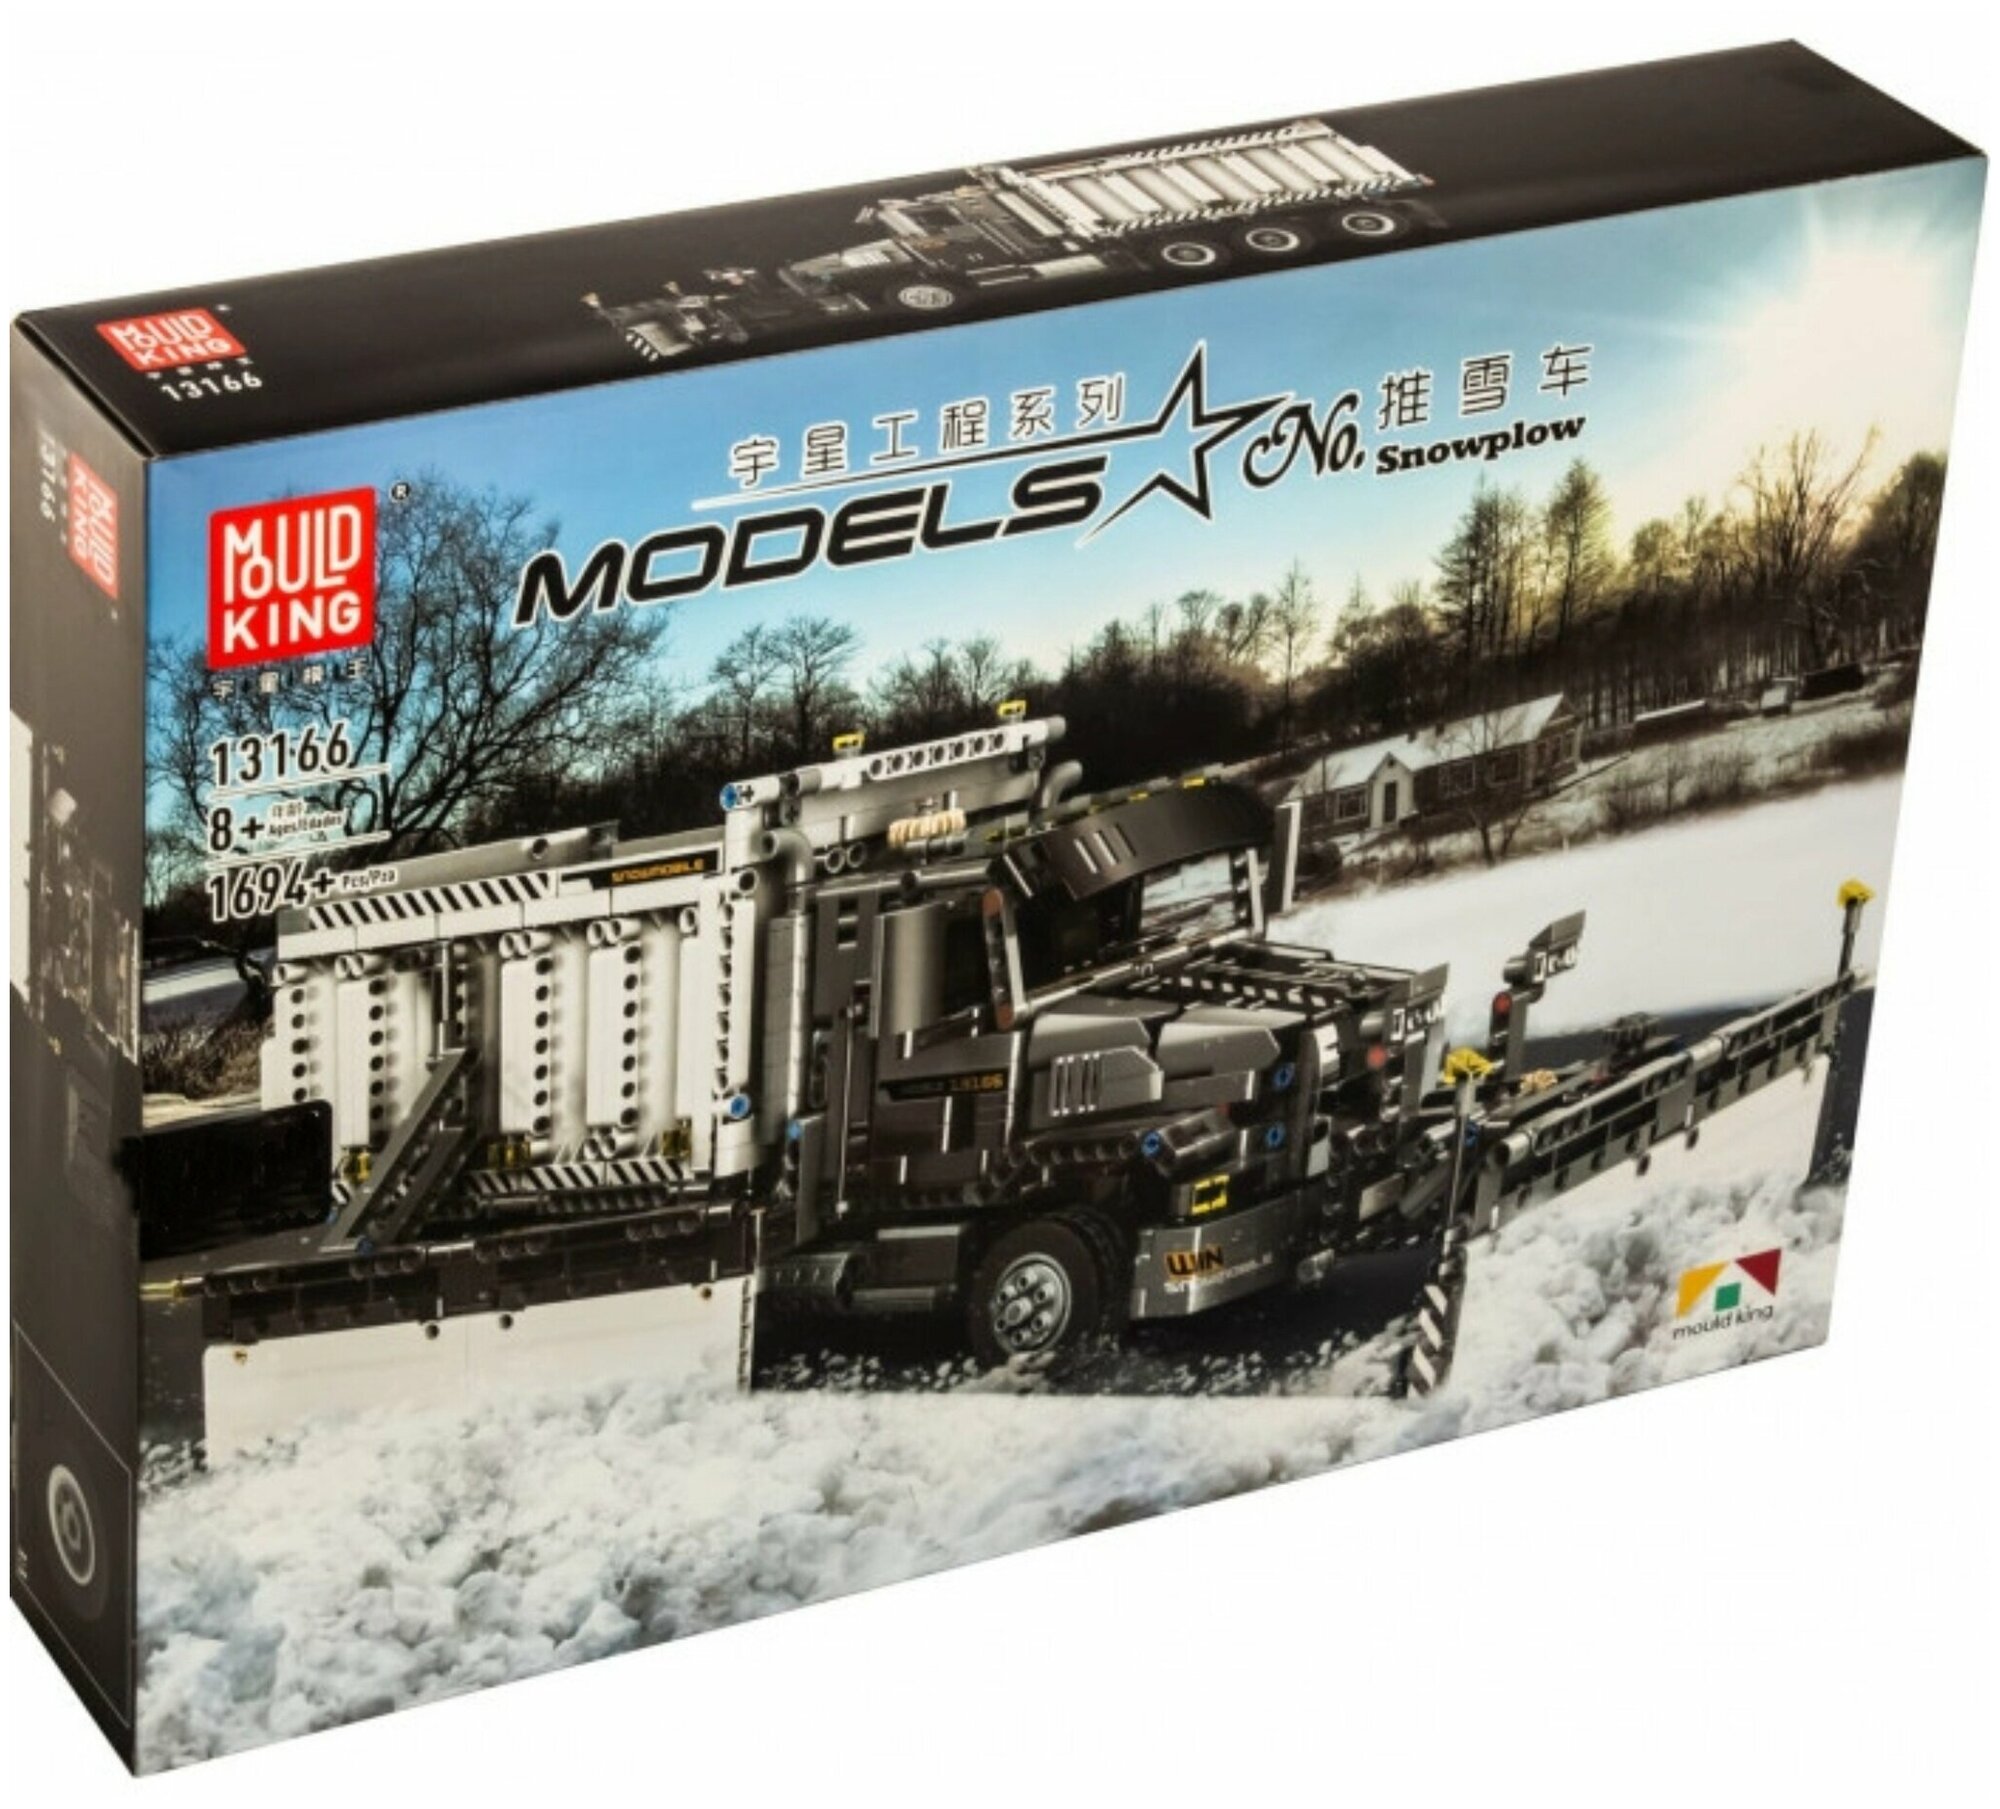 Конструктор Снегоуборочная машина Mould King 13166 , 1694 детали / грузовик для мальчика пластиковый / сборная модель совместимый с LEGO /